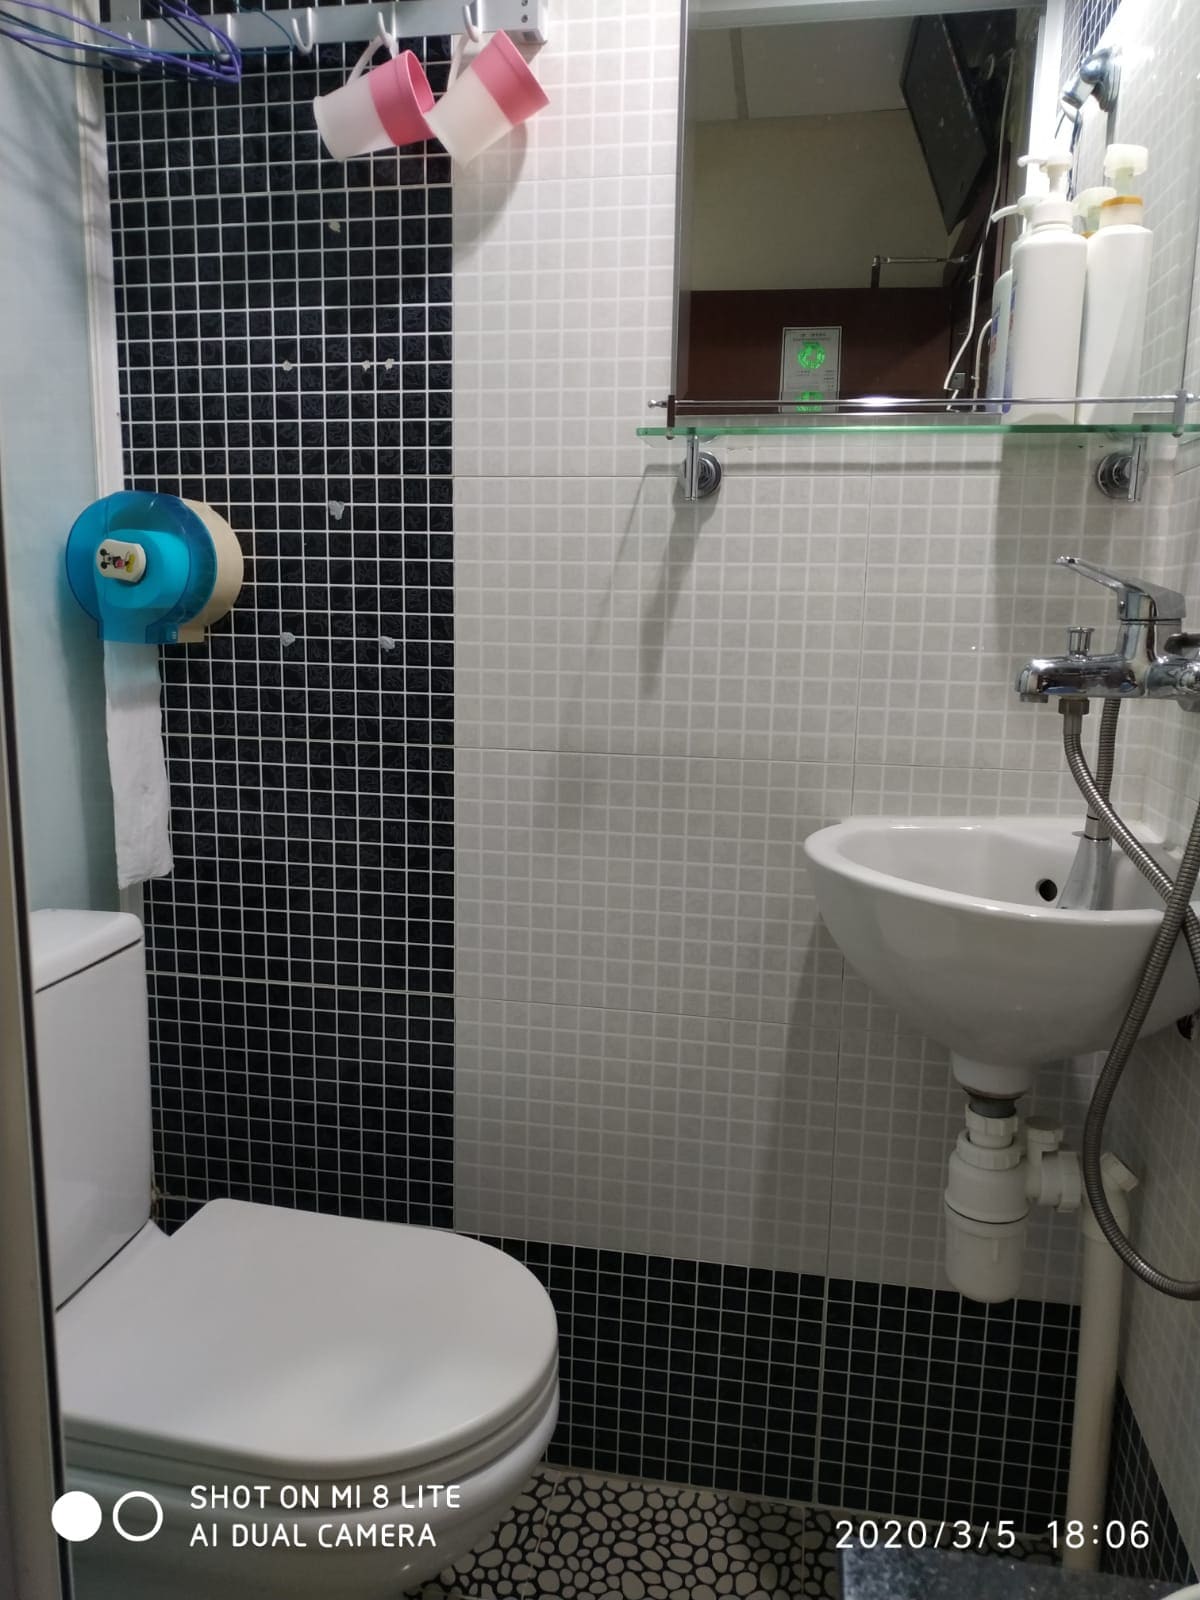 尖沙咀中心地段 地鐵上蓋 兩人房 #獨立浴室 #乾淨整潔#交通方便 #適合閨蜜朋友旅行  801房